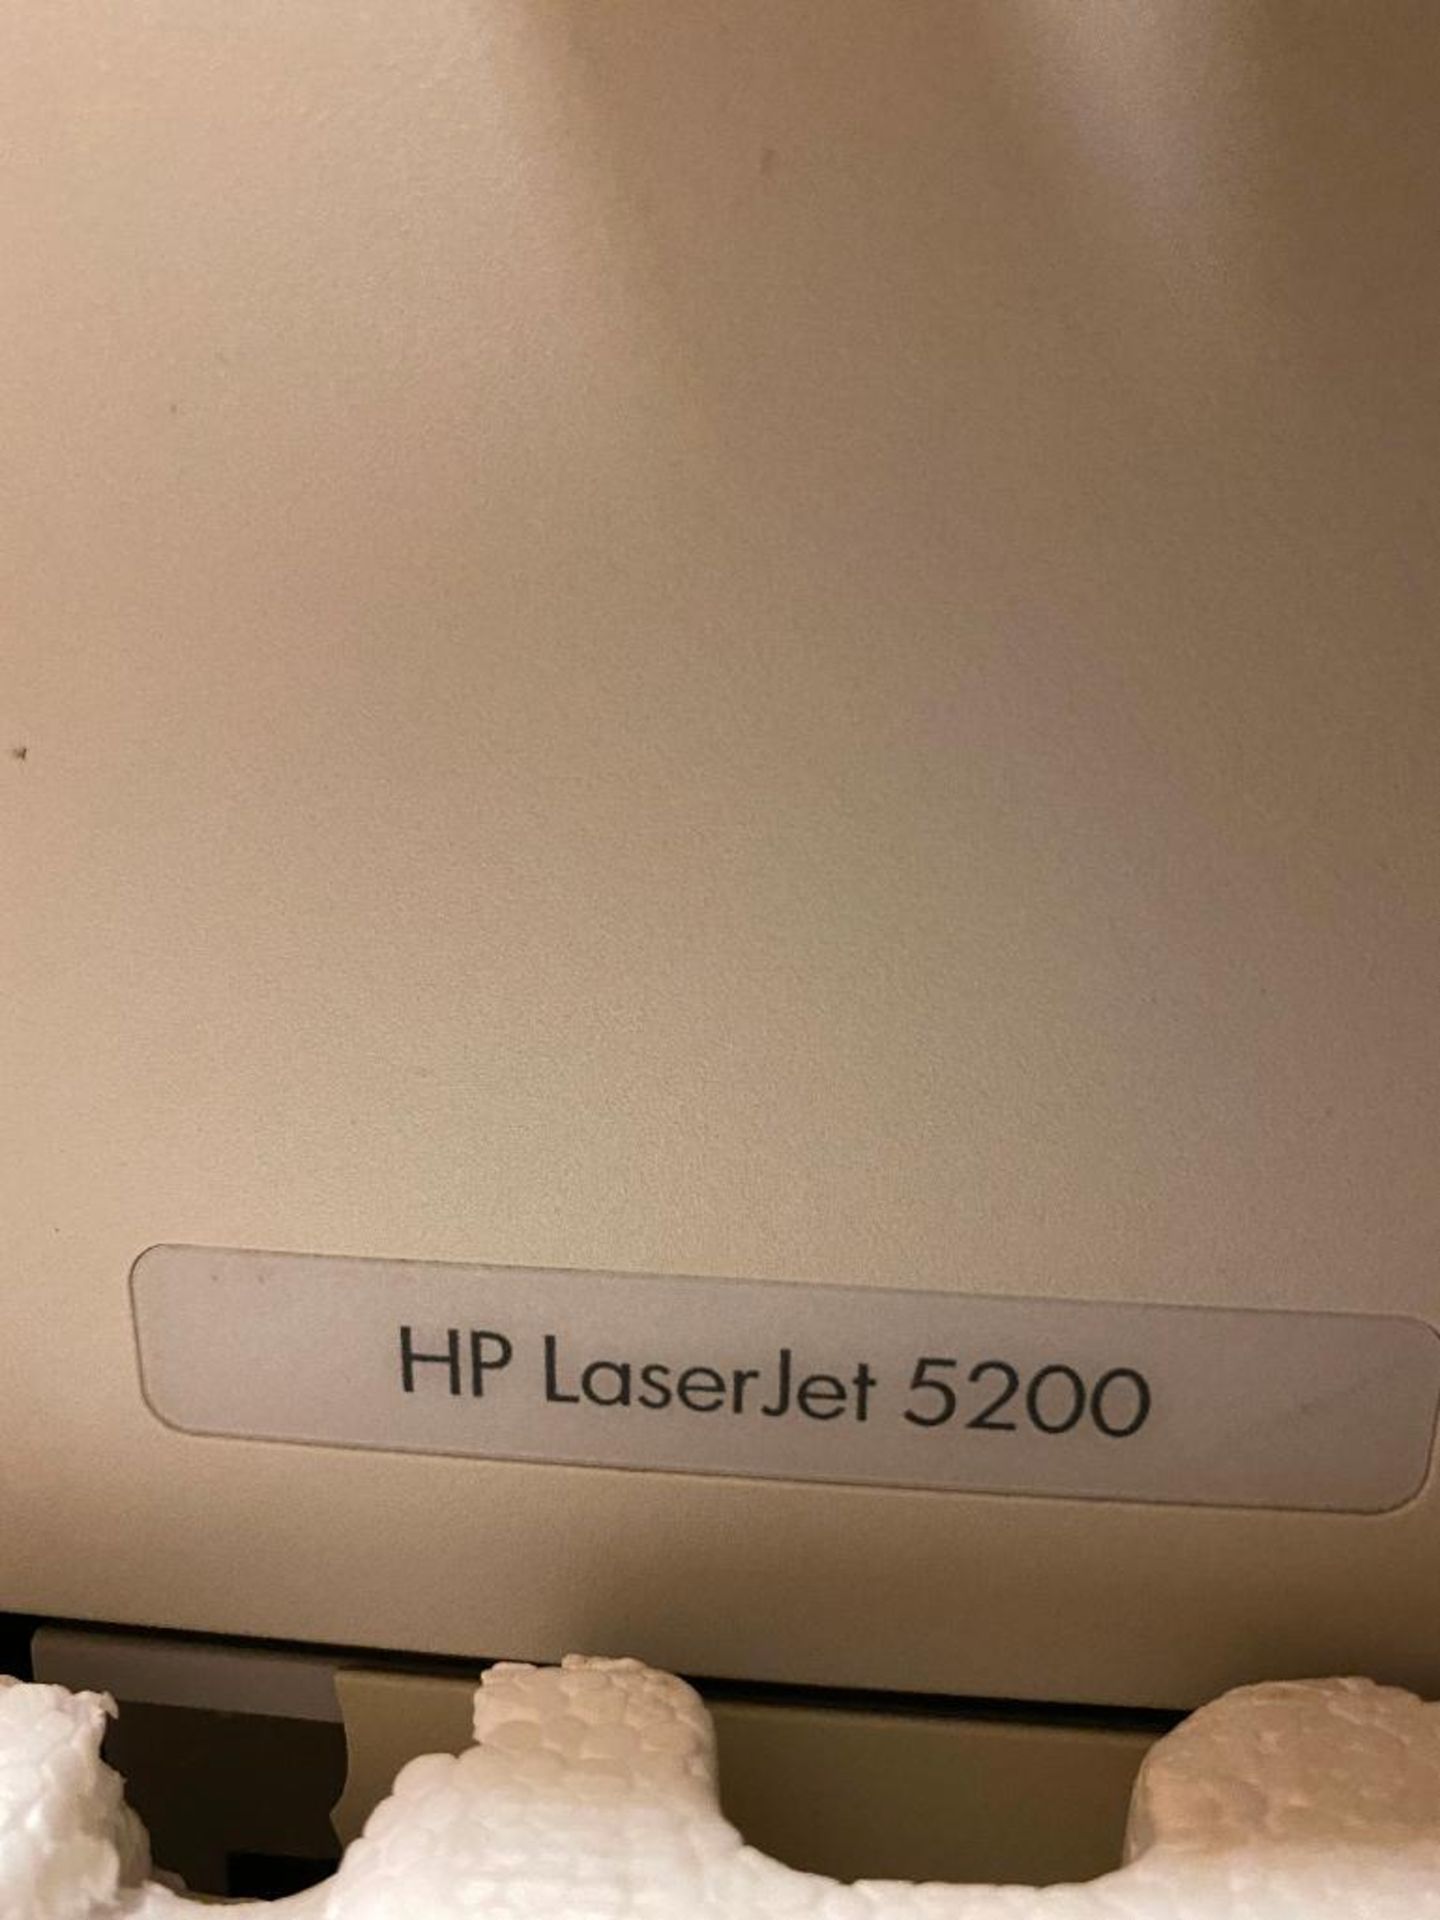 HP Laserjet 5200 Printer - Image 3 of 3